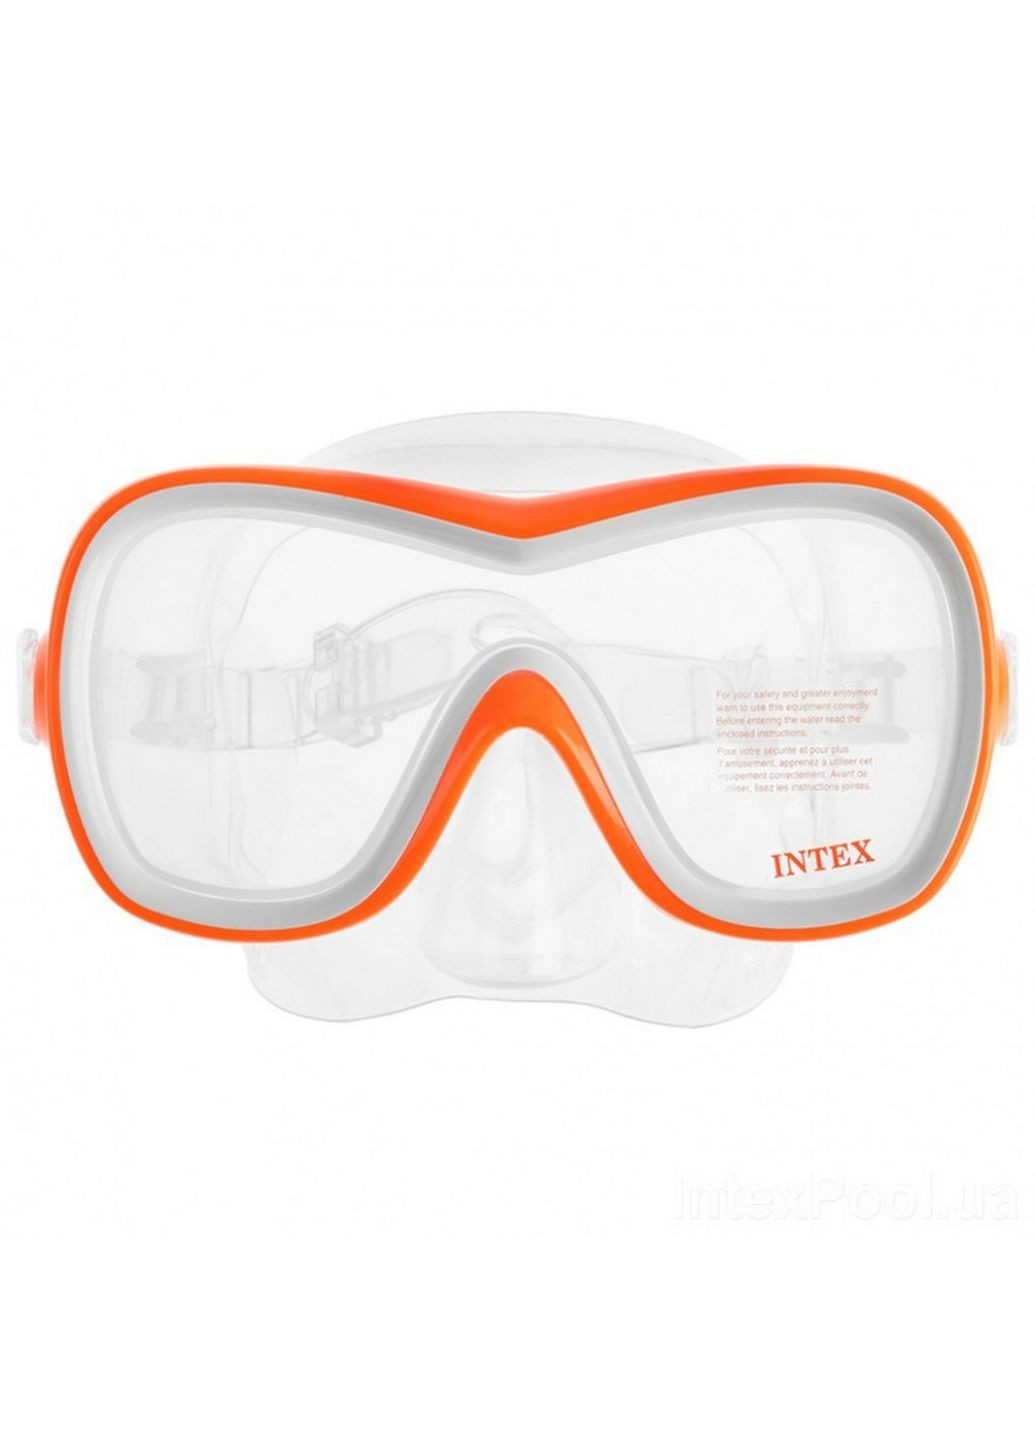 Набор для подводного плавания маска + трубка Intex (288135966)